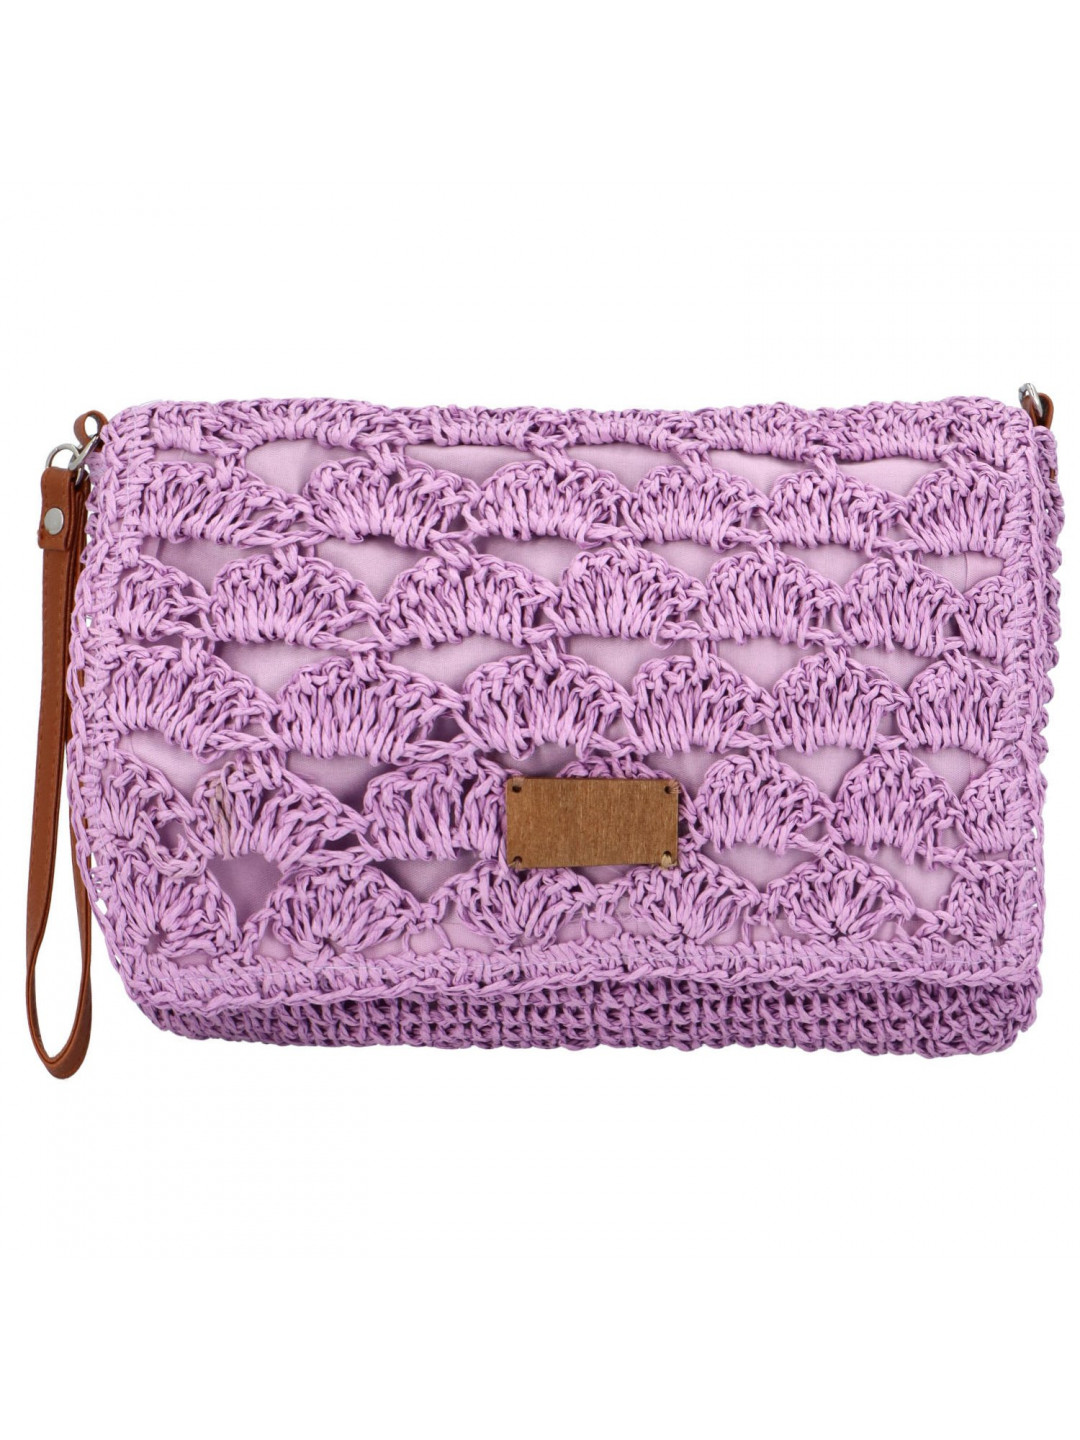 Měkká kabelka do ruky s pleteným vzorem Vivalo fialová